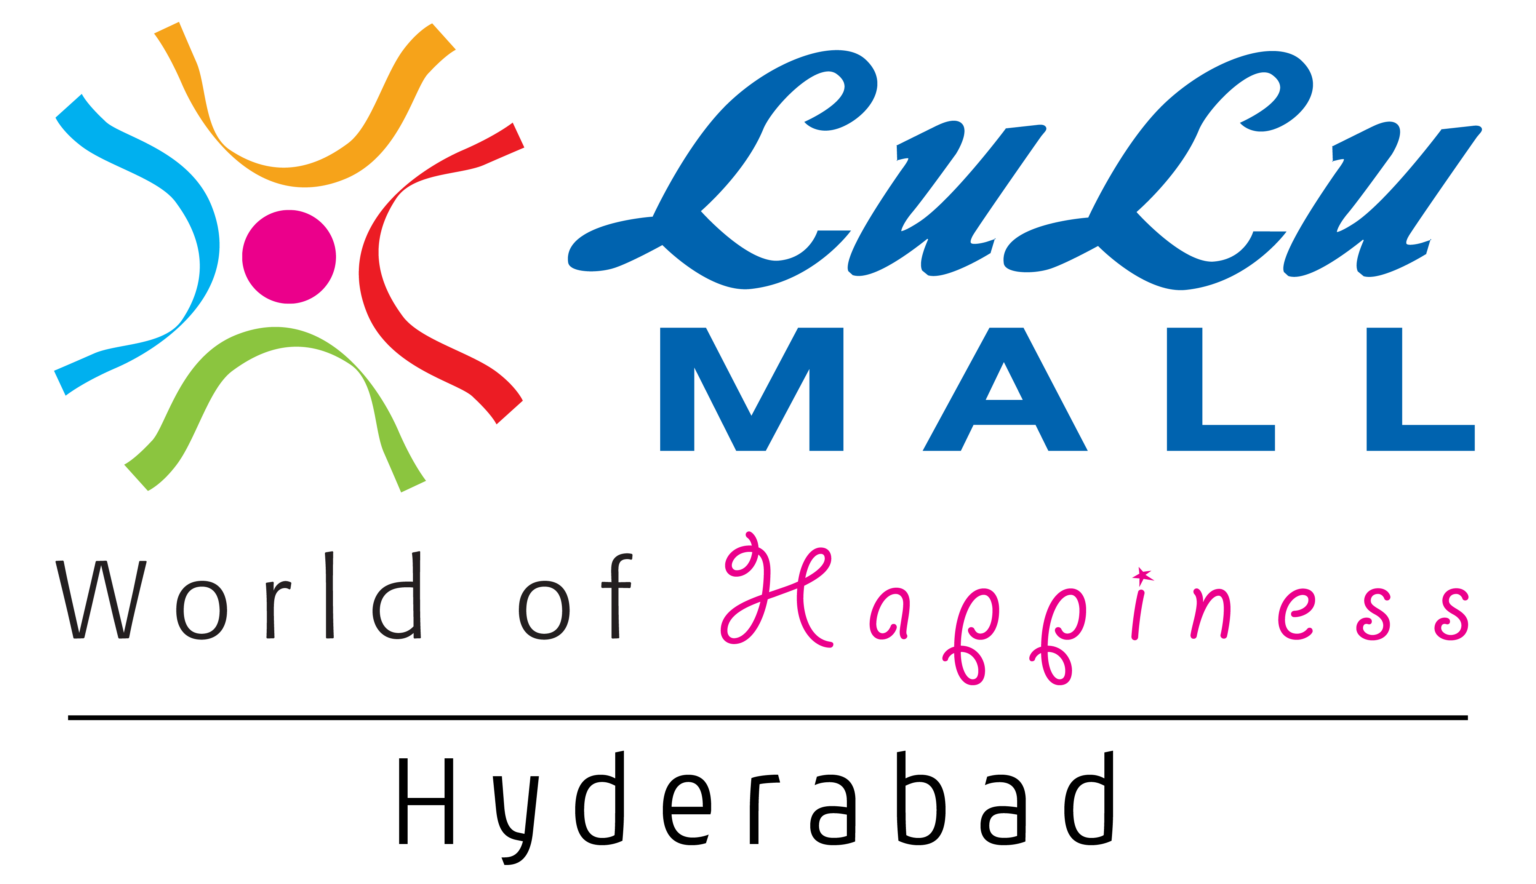 LuLu Hypermarket – LuLu Mall